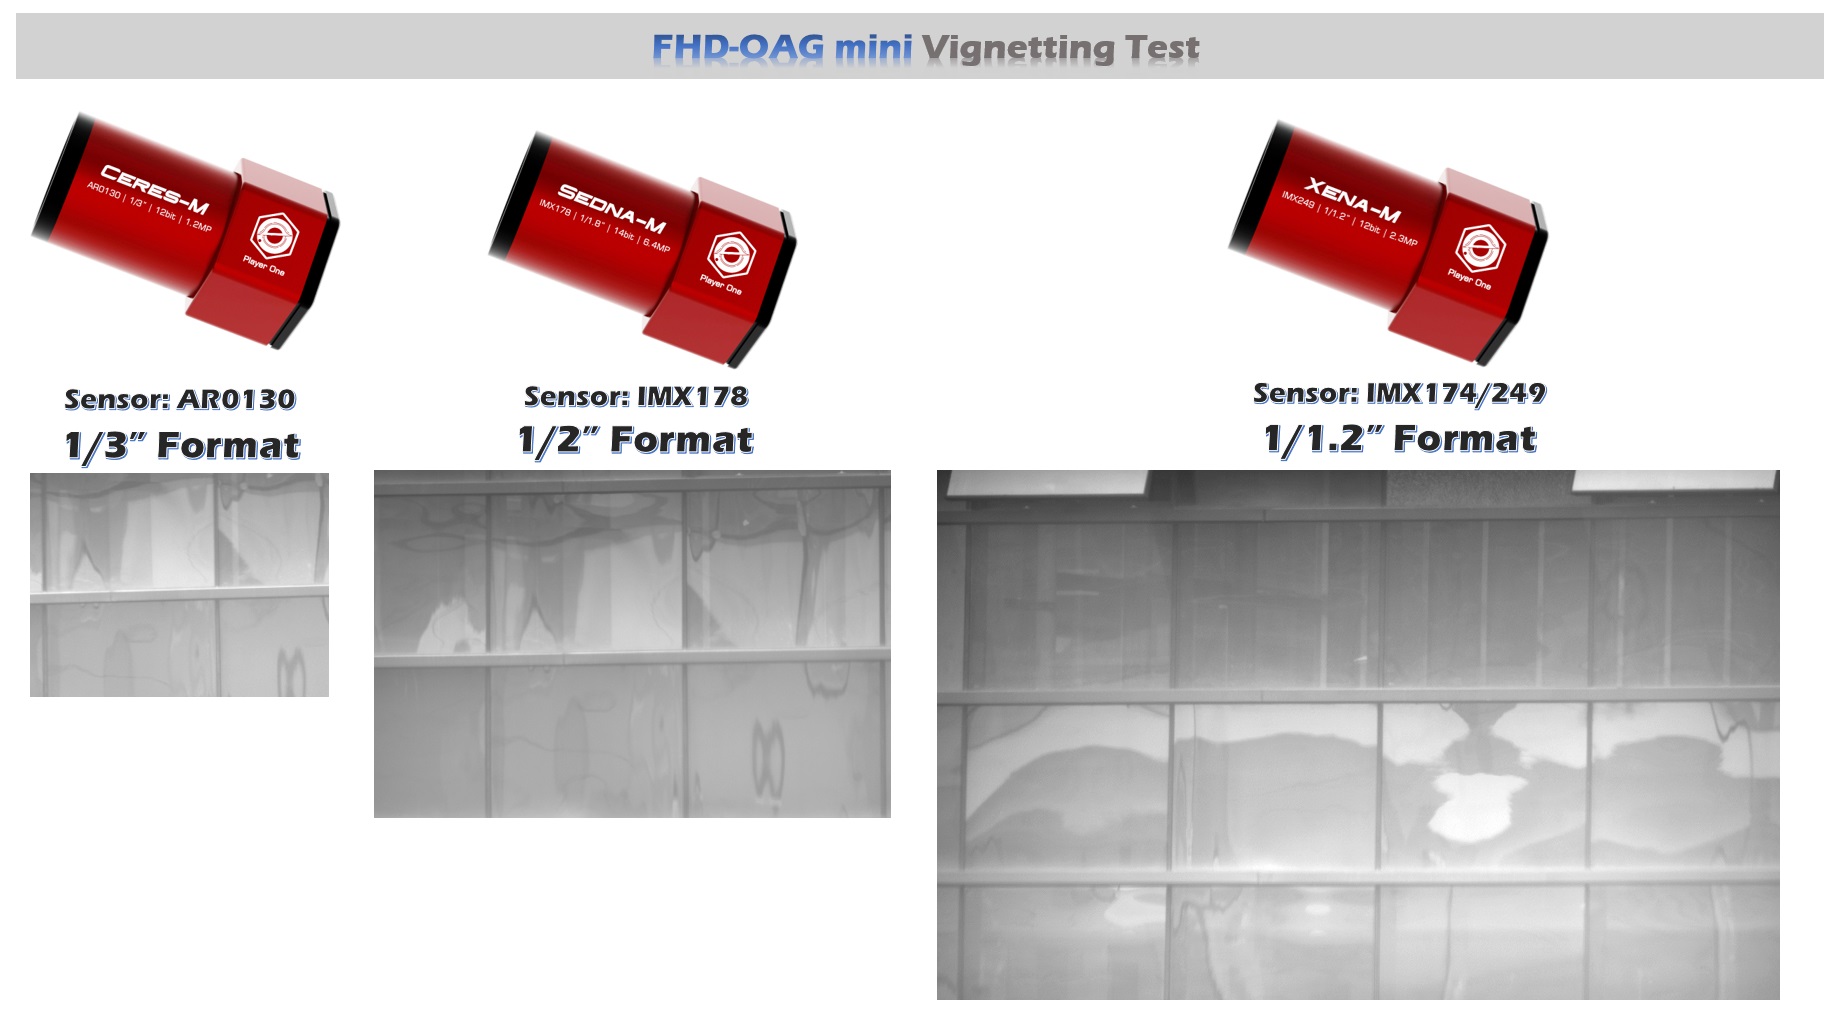 OAG-MINI-Vignetting-test.jpg (1838×1022)